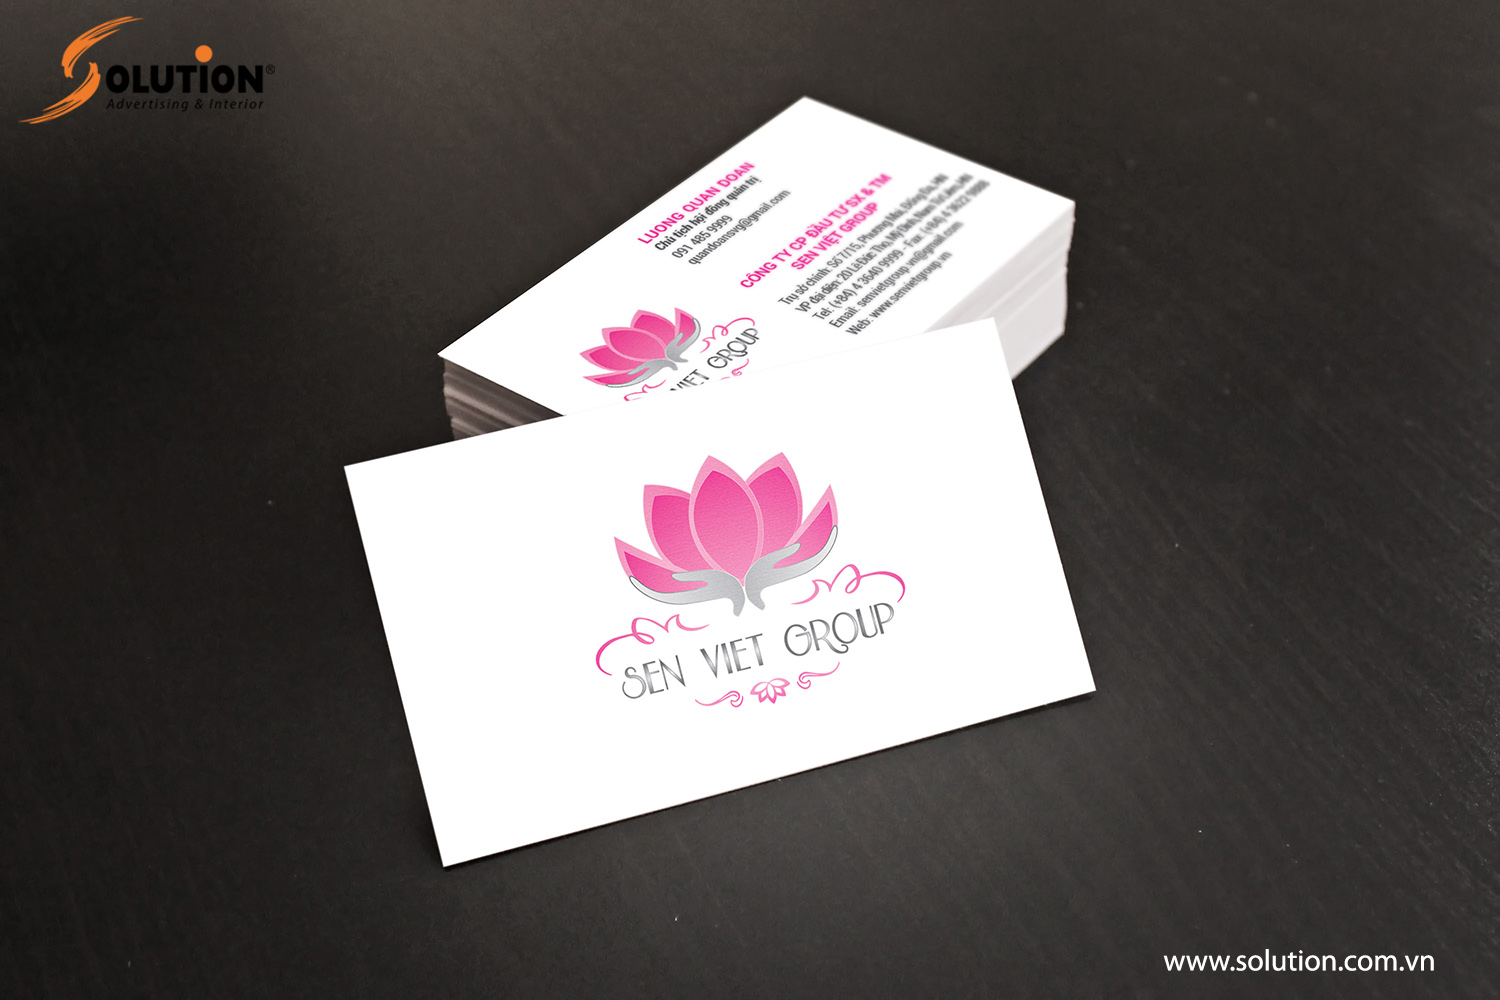 Mẫu thiết kế name-card công ty trong bộ nhận diện thương hiệu Công ty Sen Việt Group